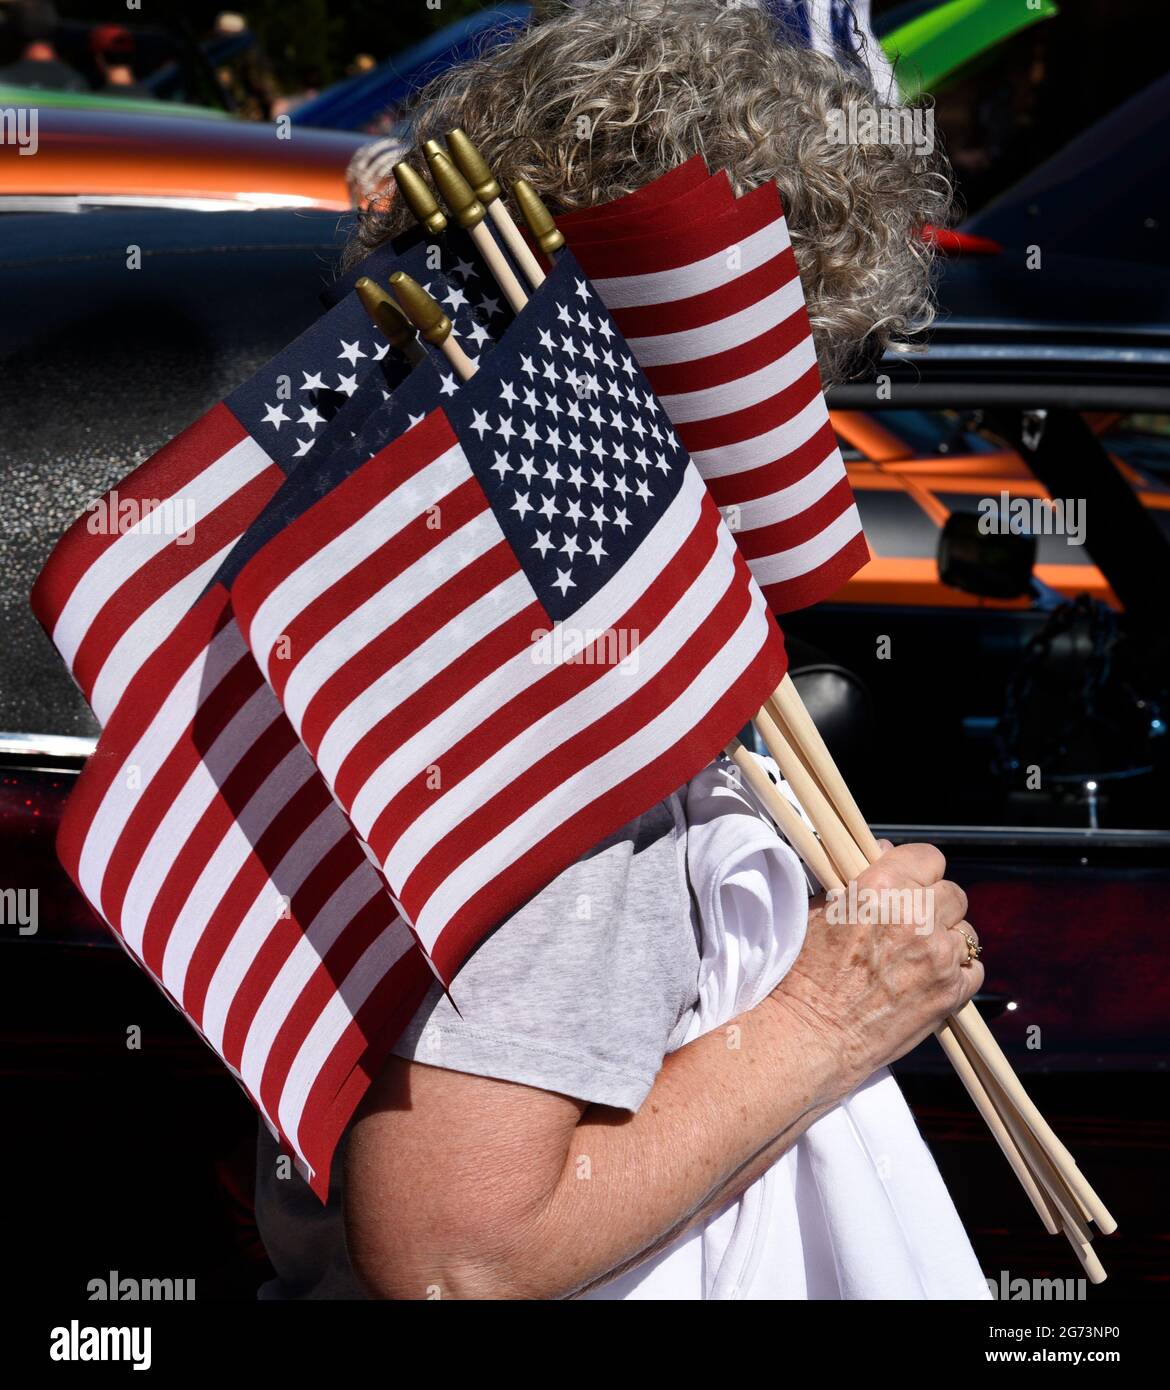 Eine Frau verteilt kleine amerikanische Flaggen auf einer Oldtimermesse am 4. Juli in Santa Fe, New Mexico. Stockfoto